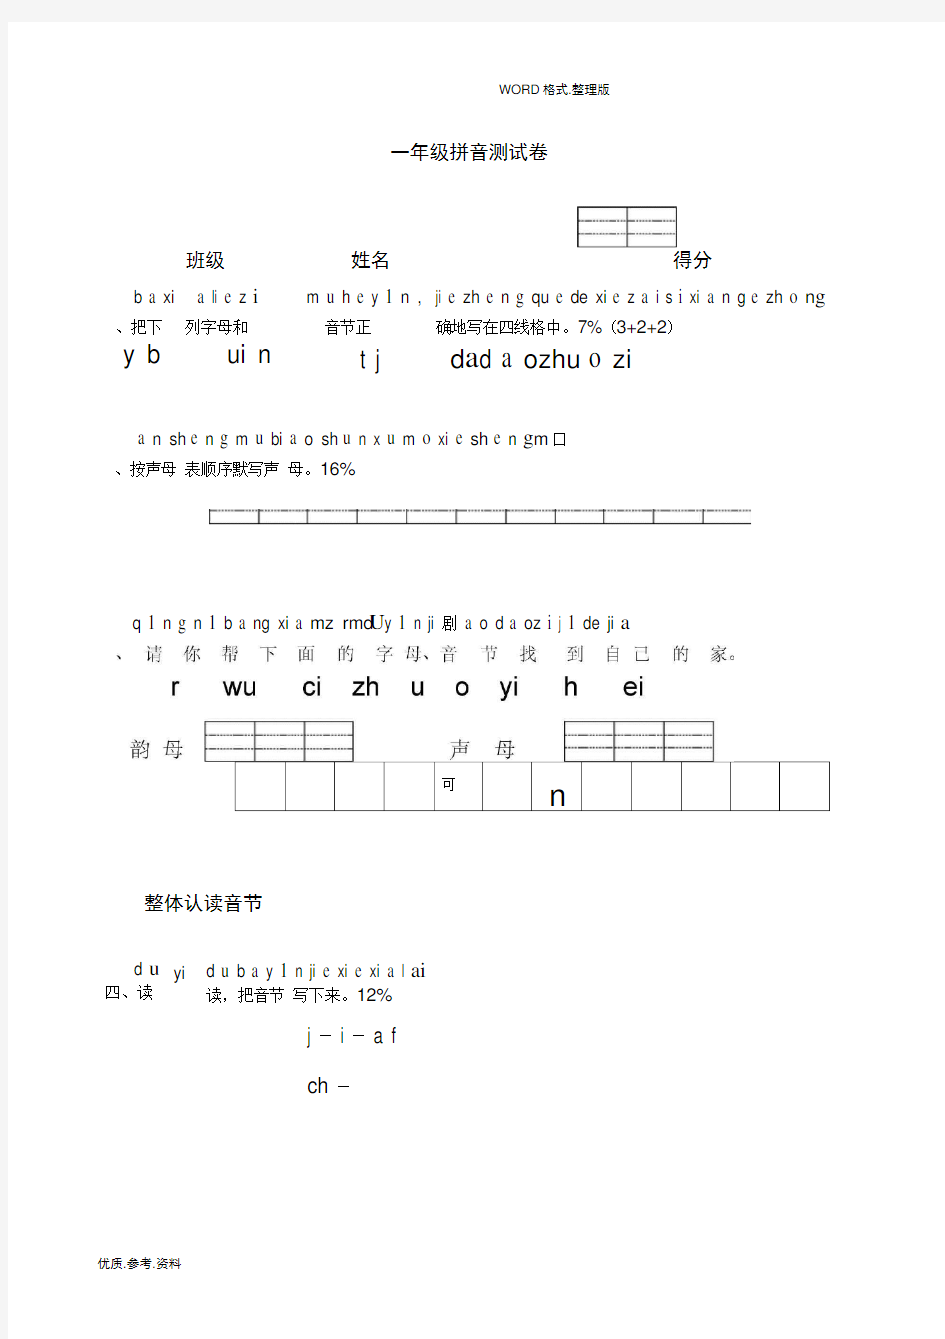 完整小学一年级汉语拼音测试题